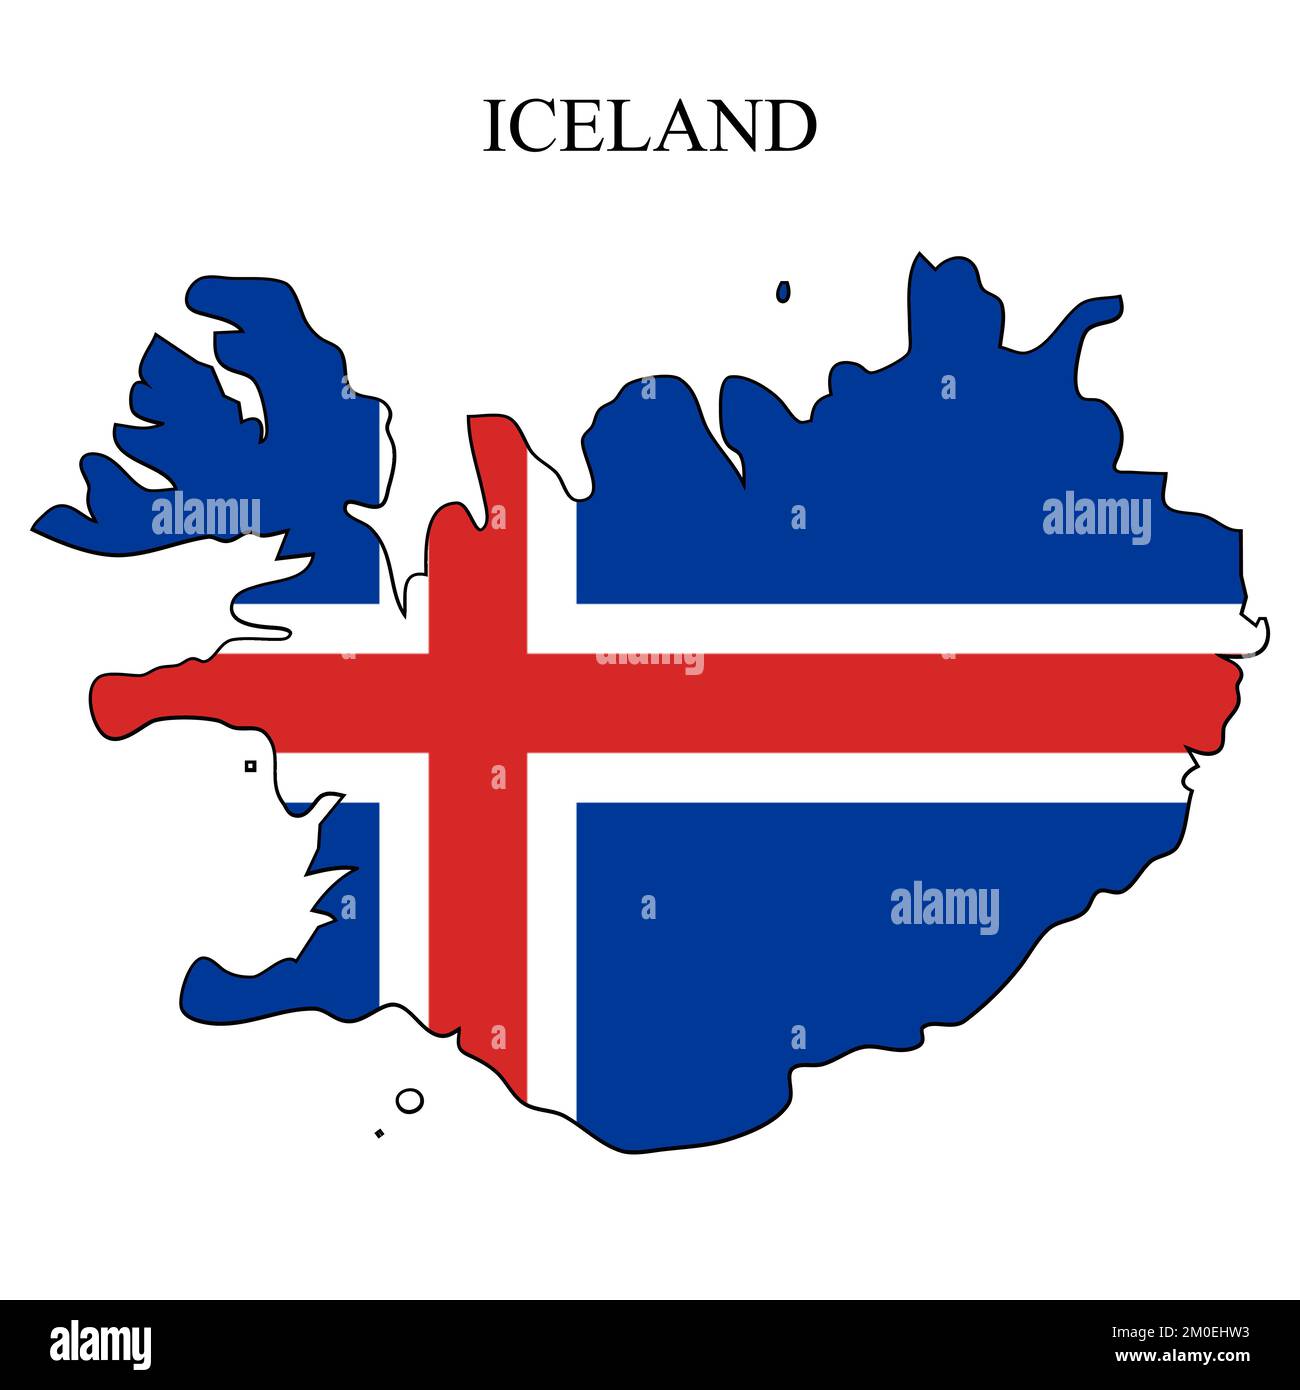 Illustration vectorielle de la carte de l'Islande. Économie mondiale. Pays célèbre. Europe du Nord. Europe. Région scandinave. Illustration de Vecteur